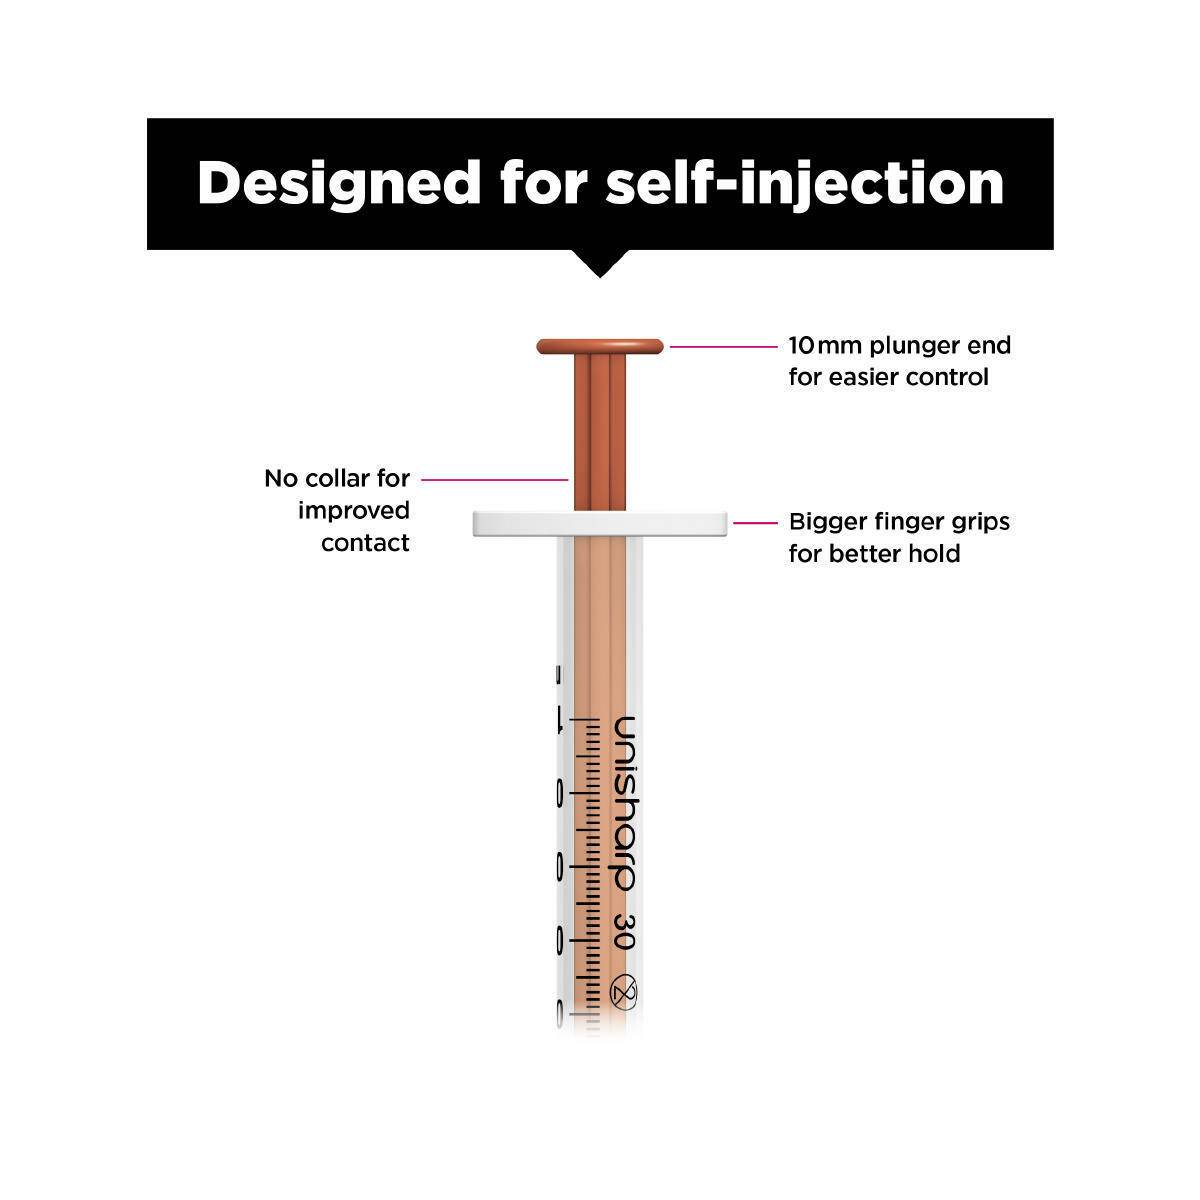 1ml 0.5 inch 30g Red Unisharp Syringe and Needle u100 - UKMEDI